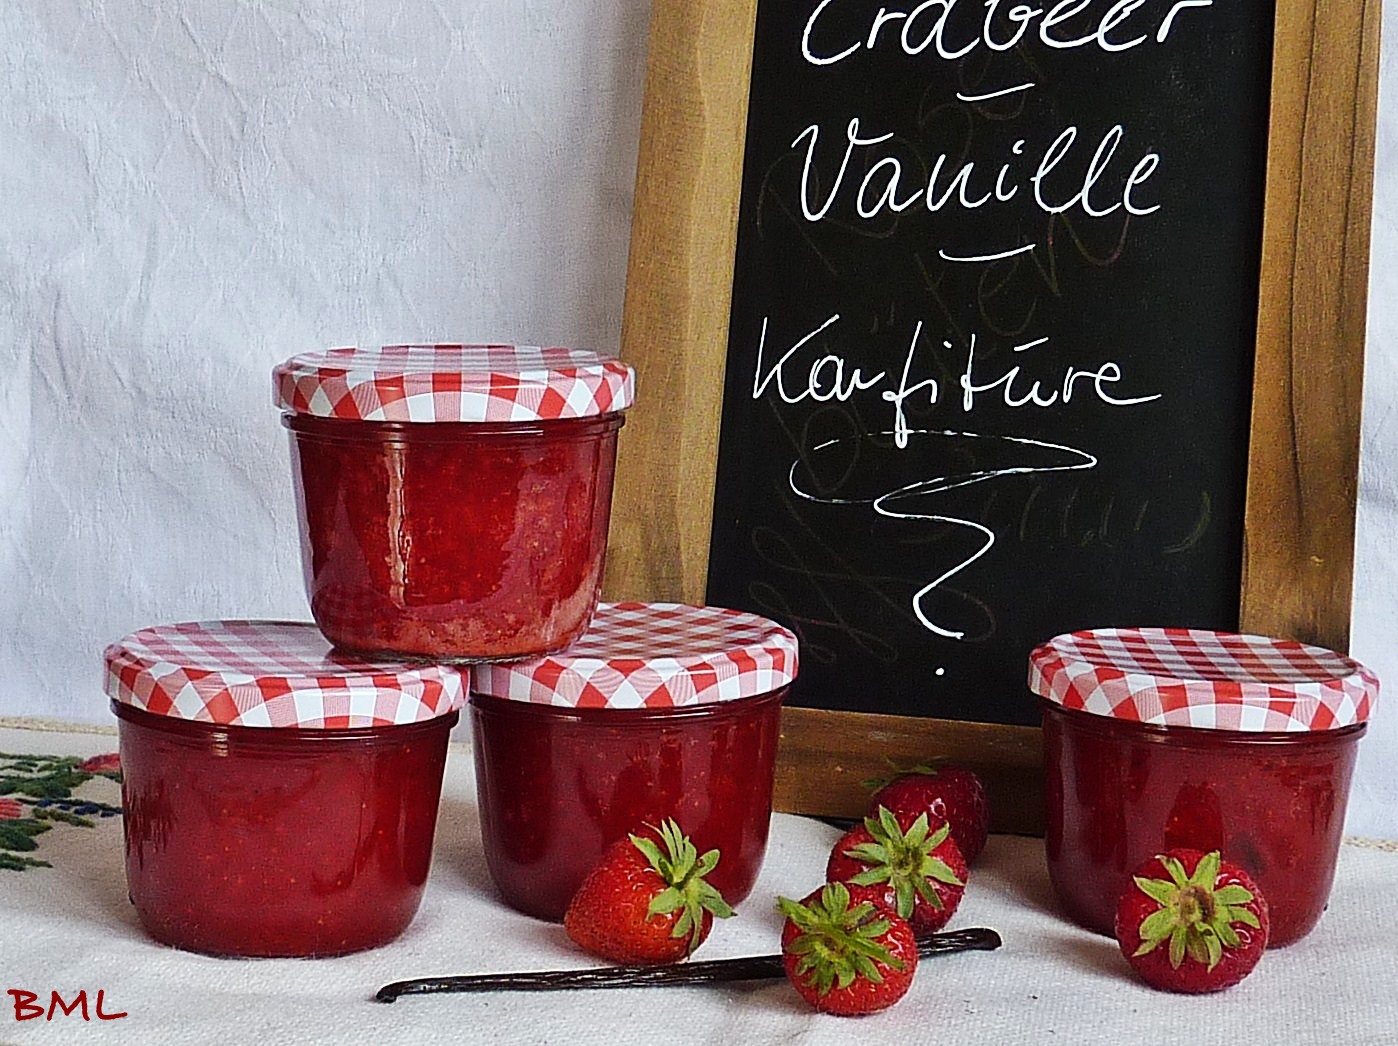 Erdbeer-Vanille-Konfitüre…sündhaft lecker | Backen mit Leidenschaft